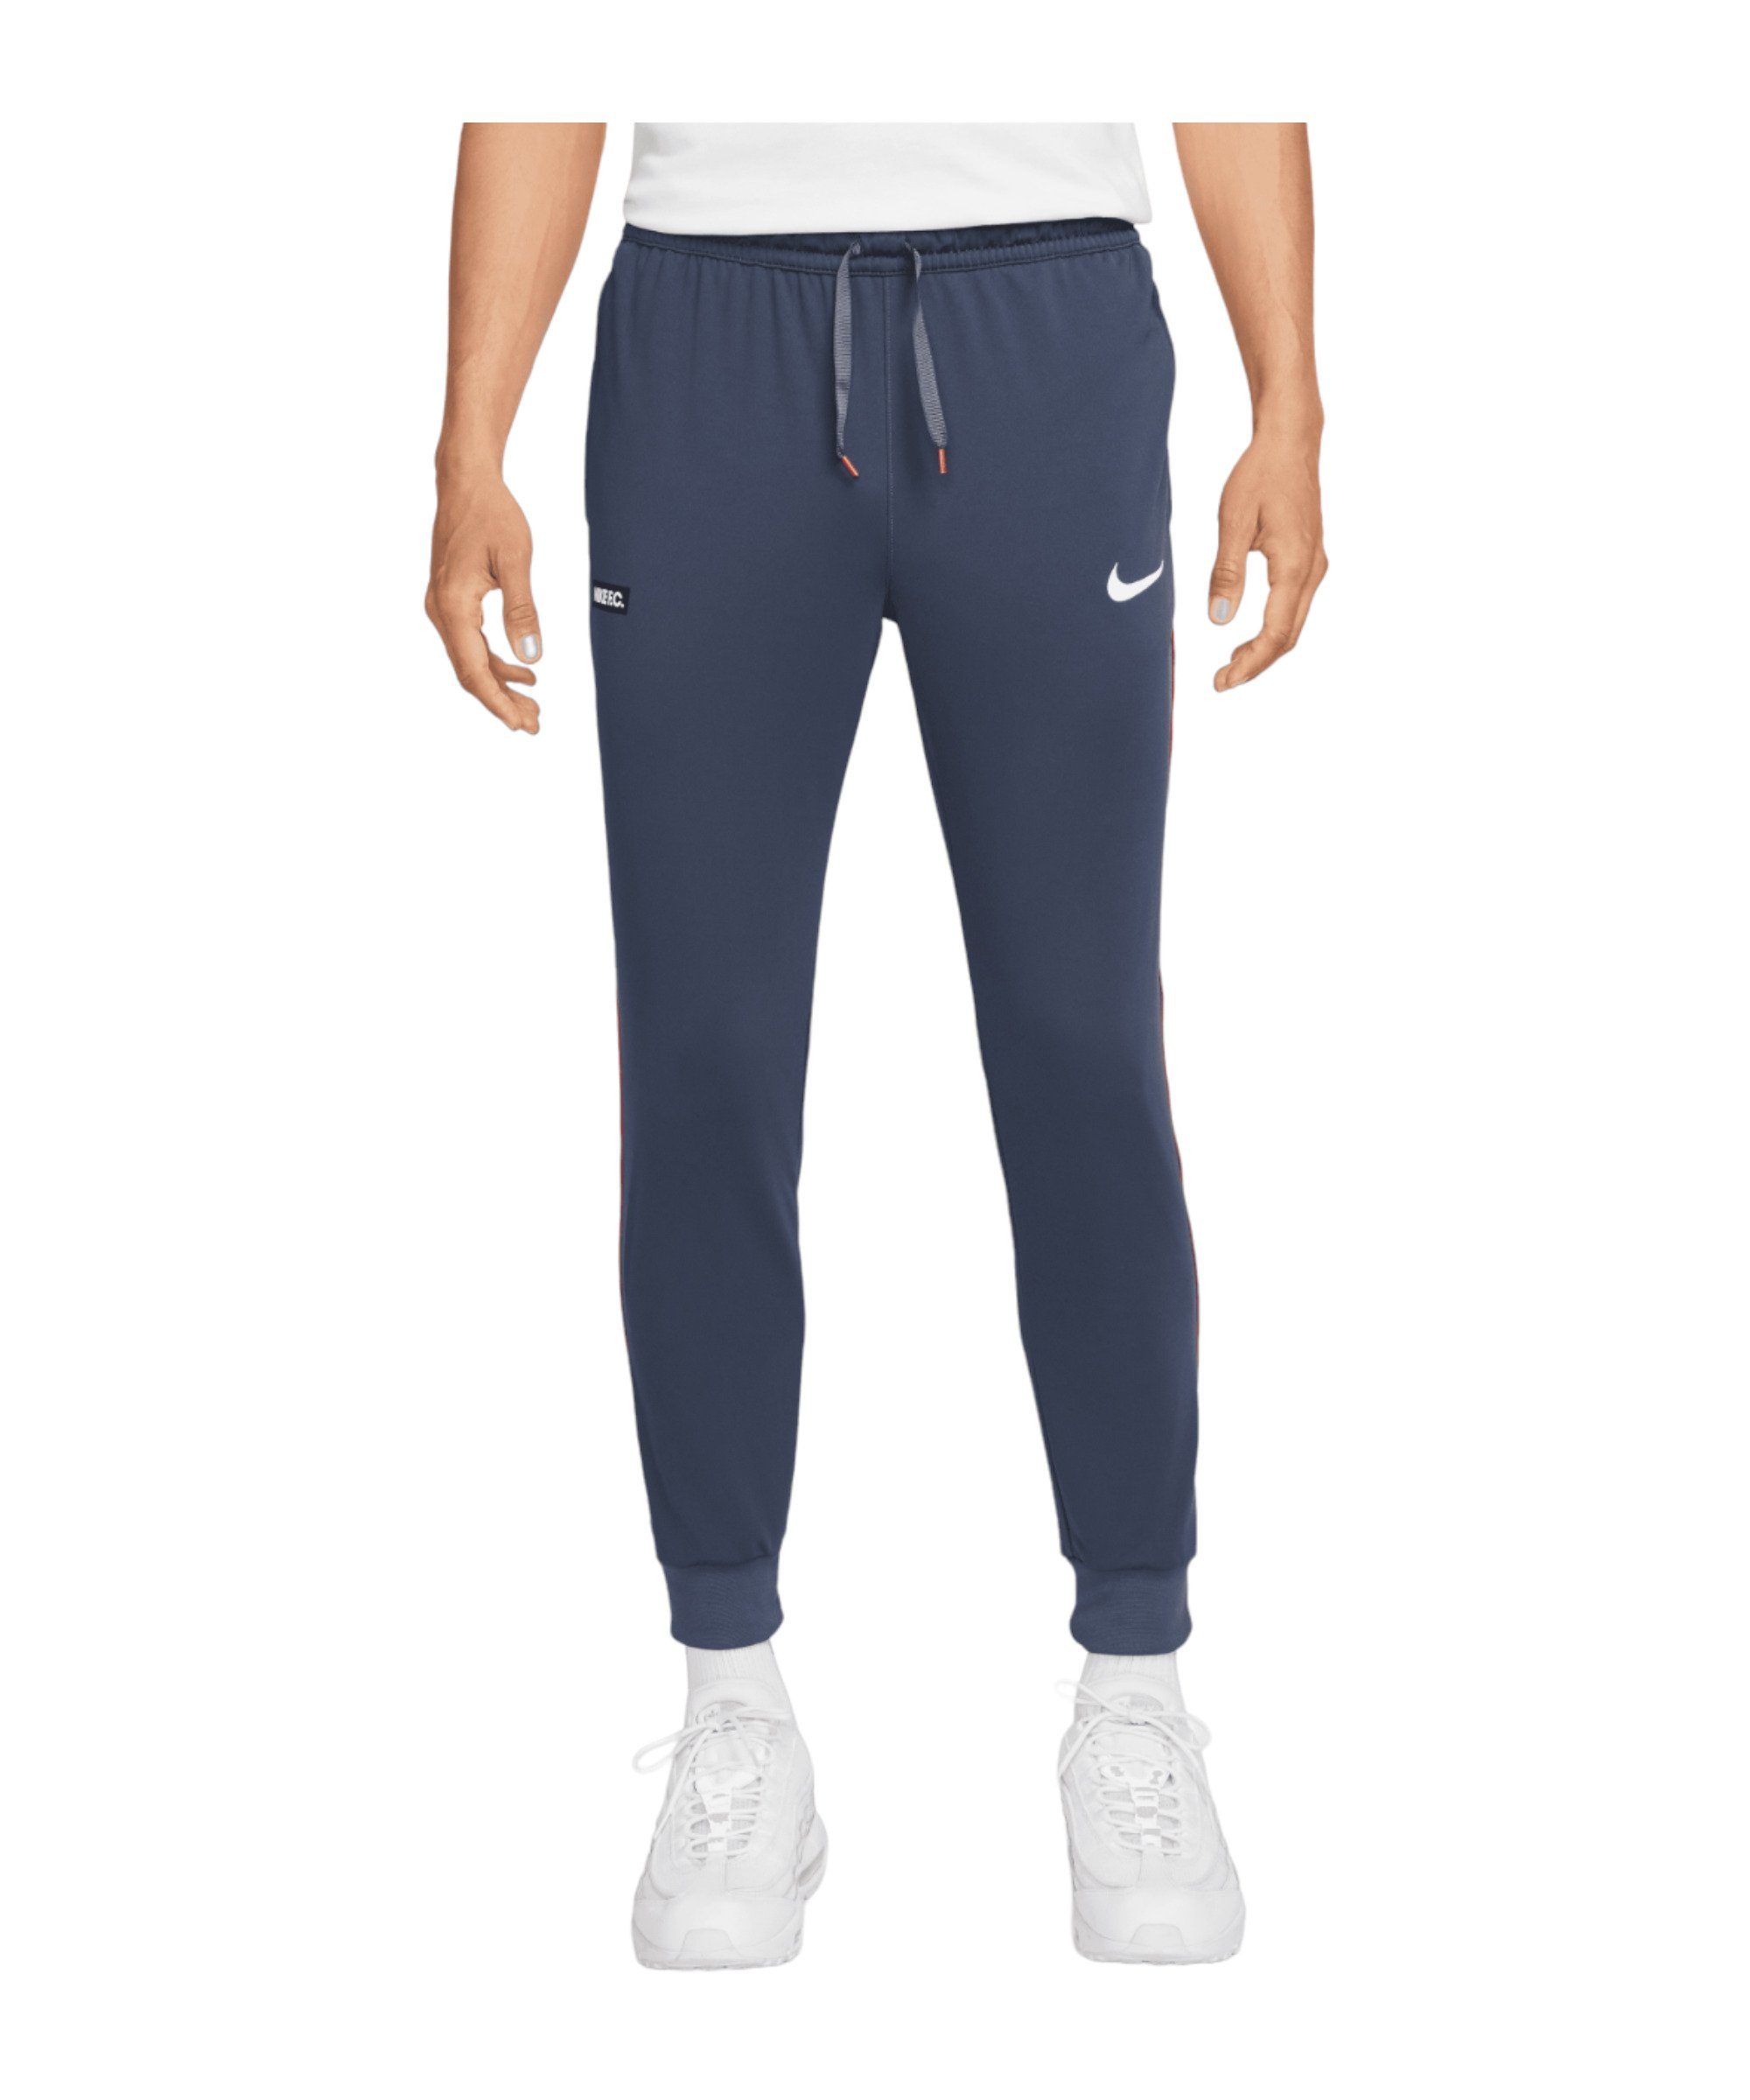 F.C. blaurotweiss Nike Hose Soccer Libero Sportswear Jogginghose